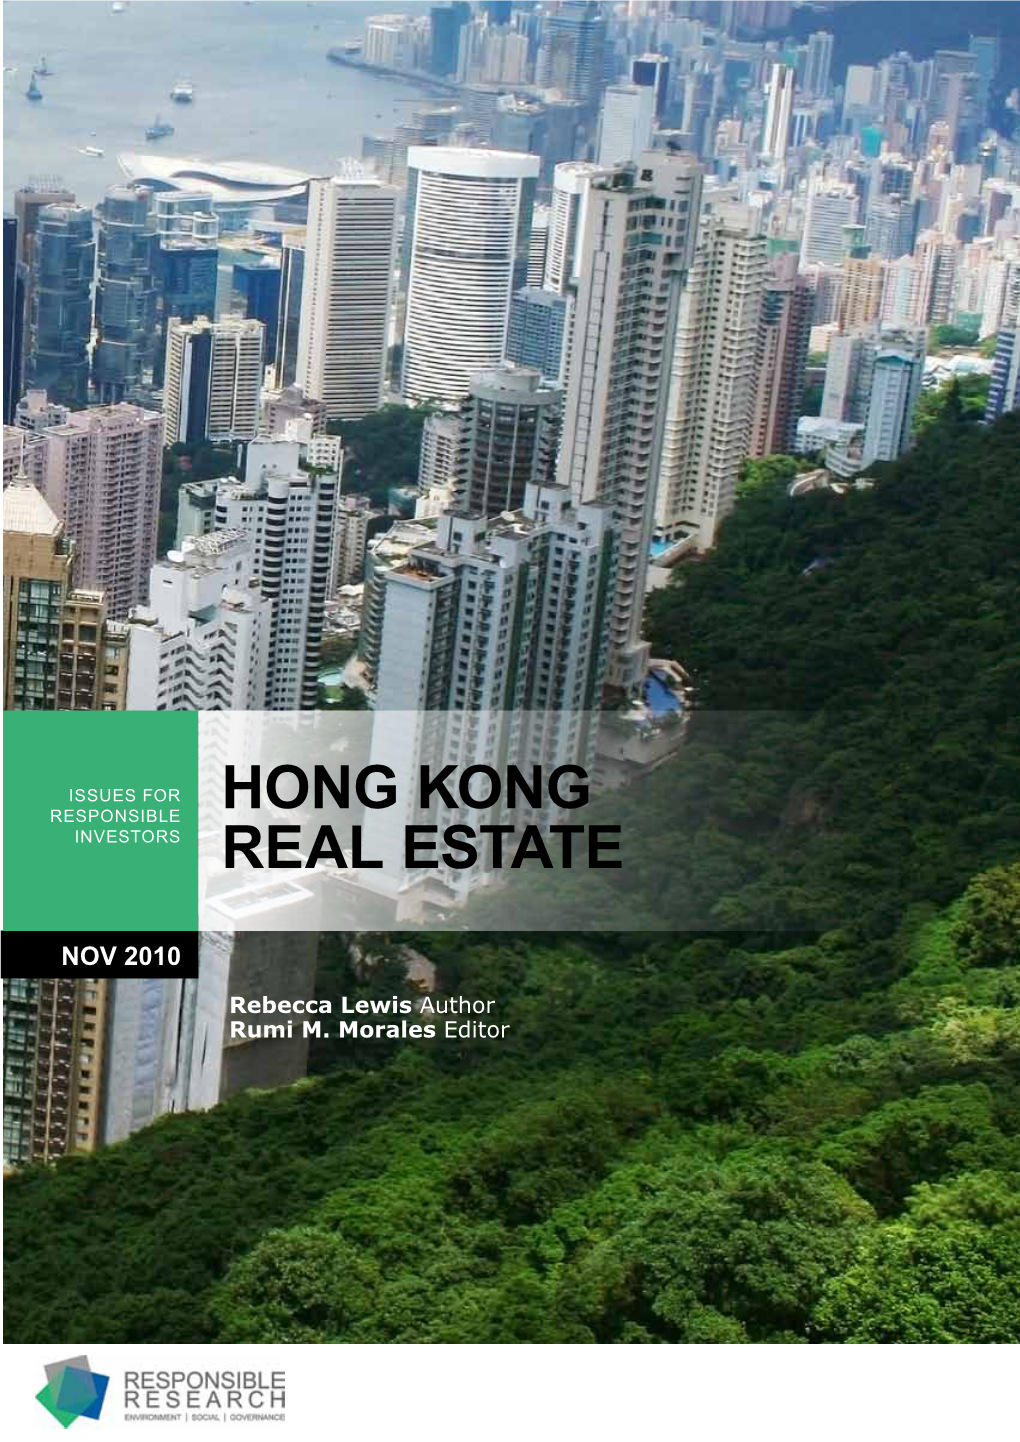 Hong Kong Real Estate Sector